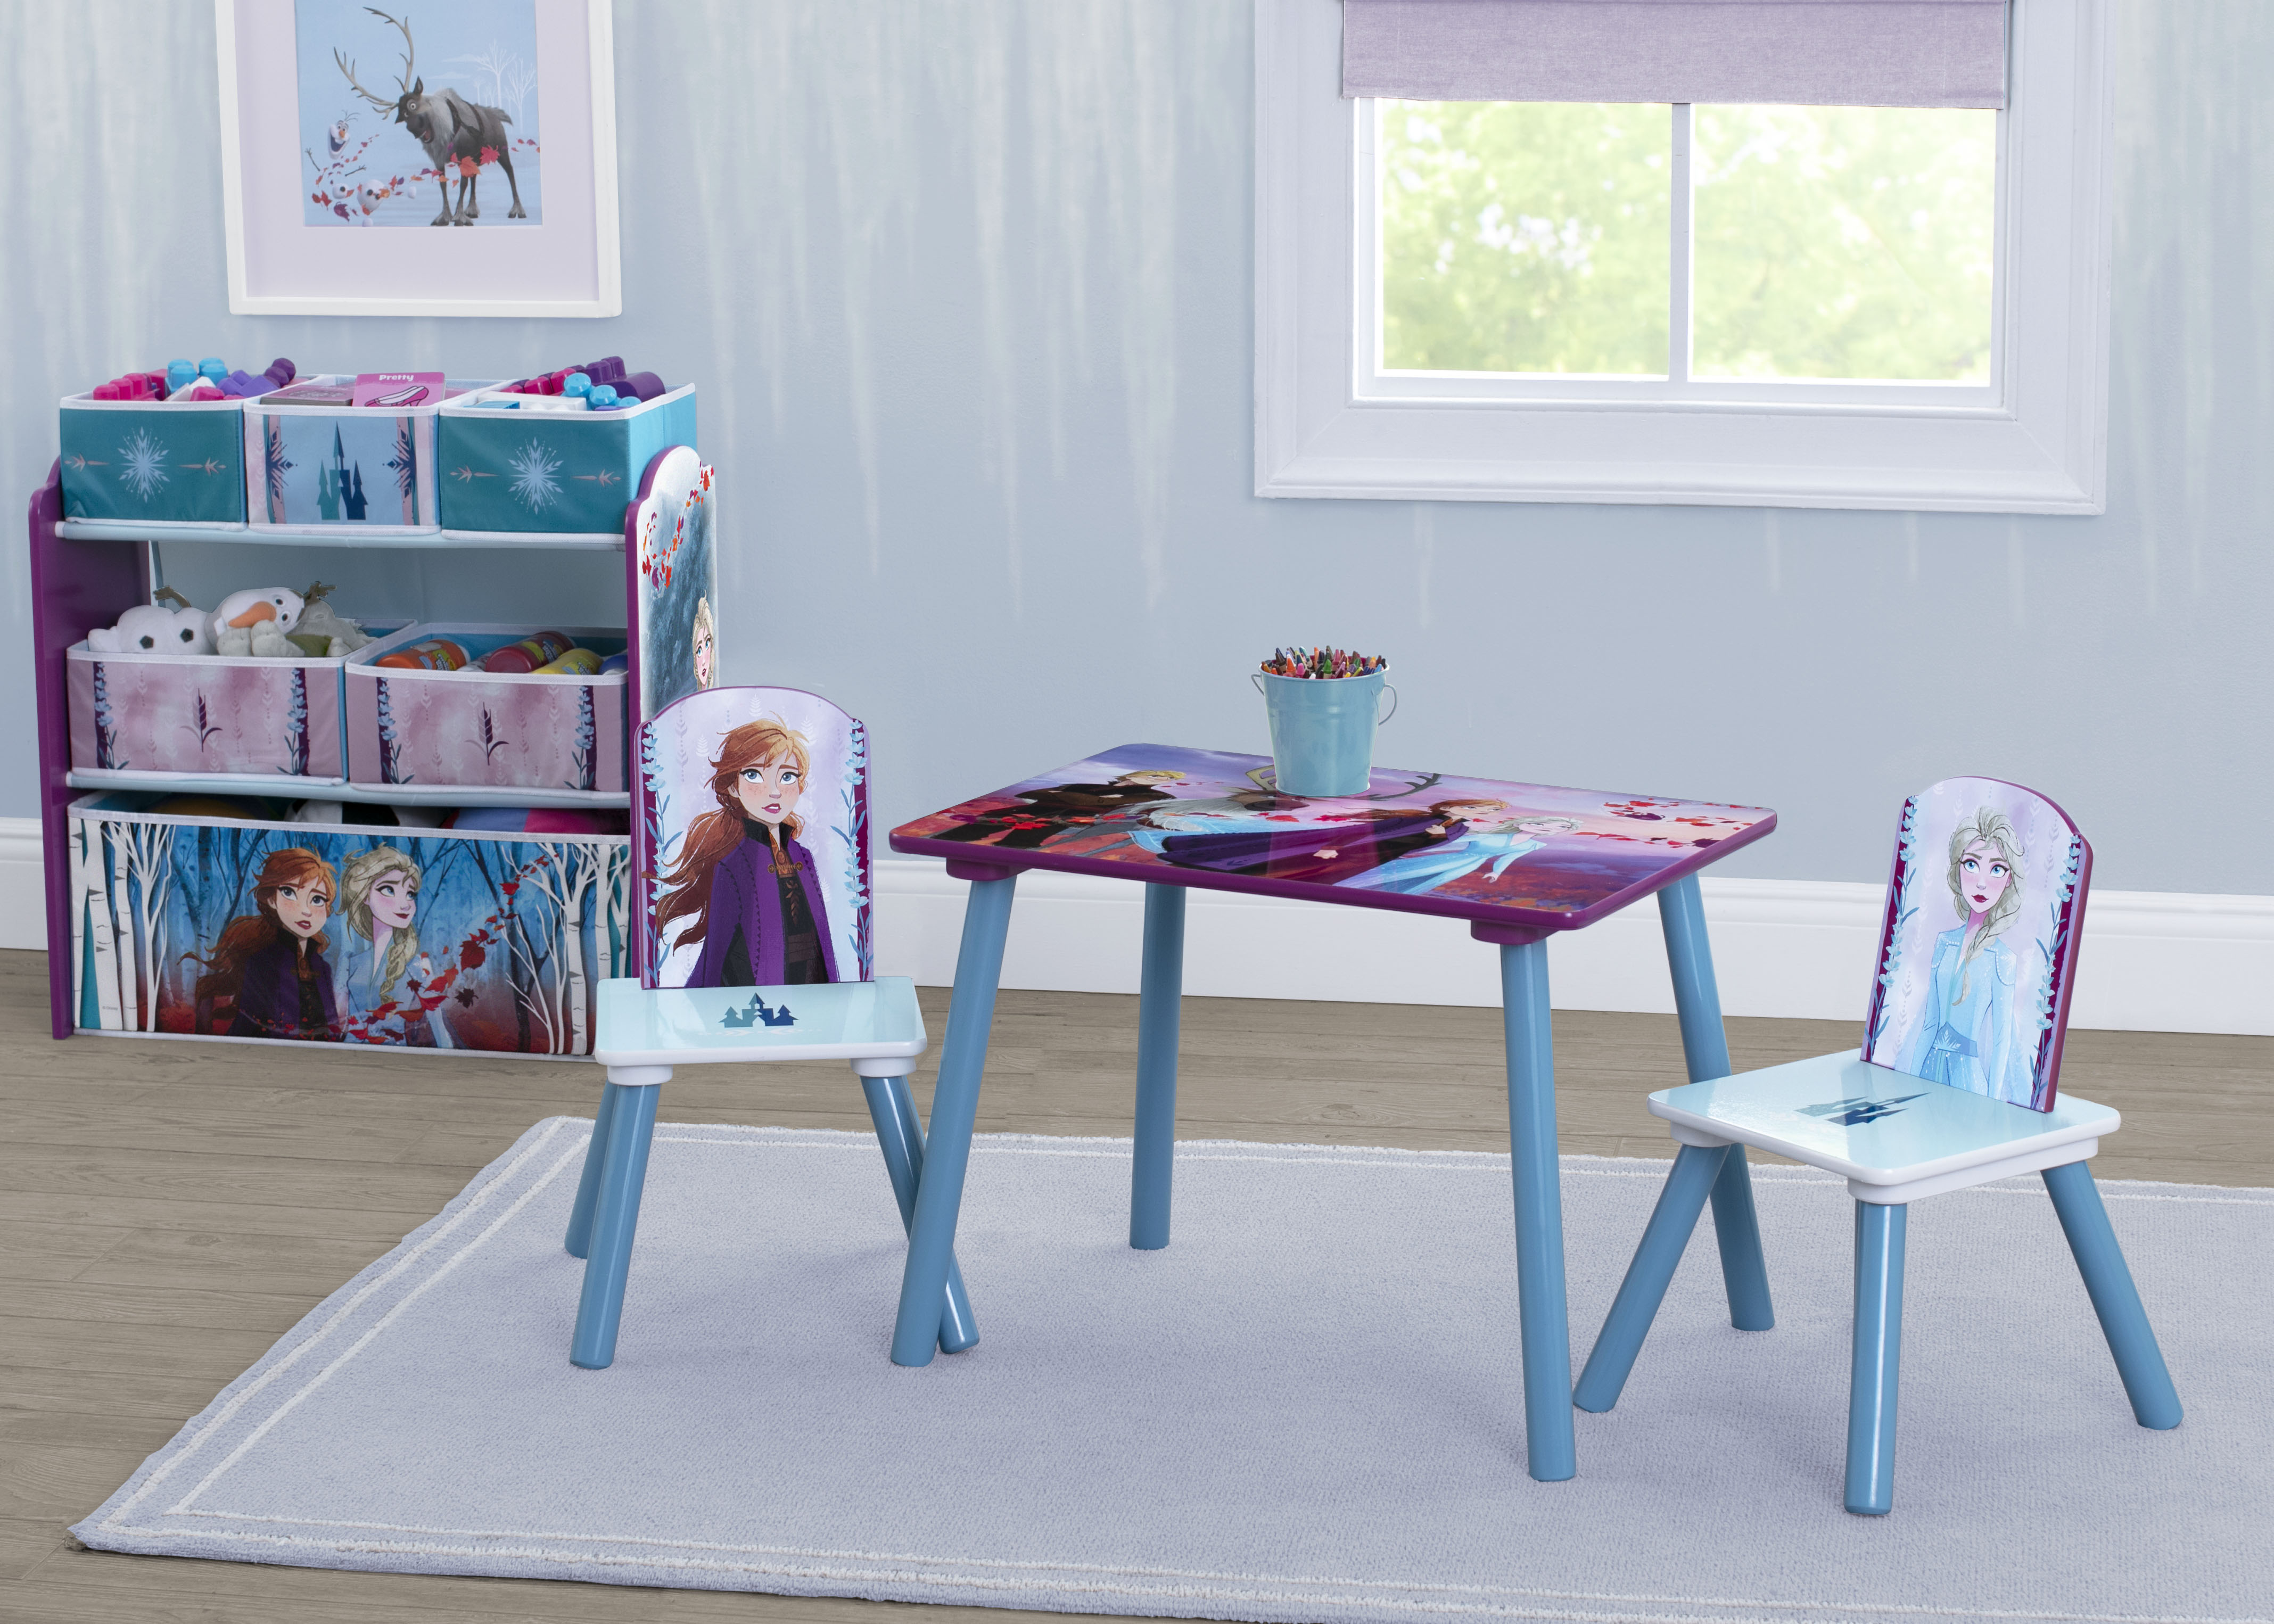 Frozen II Chair Desk with Storage Bin - Delta Children